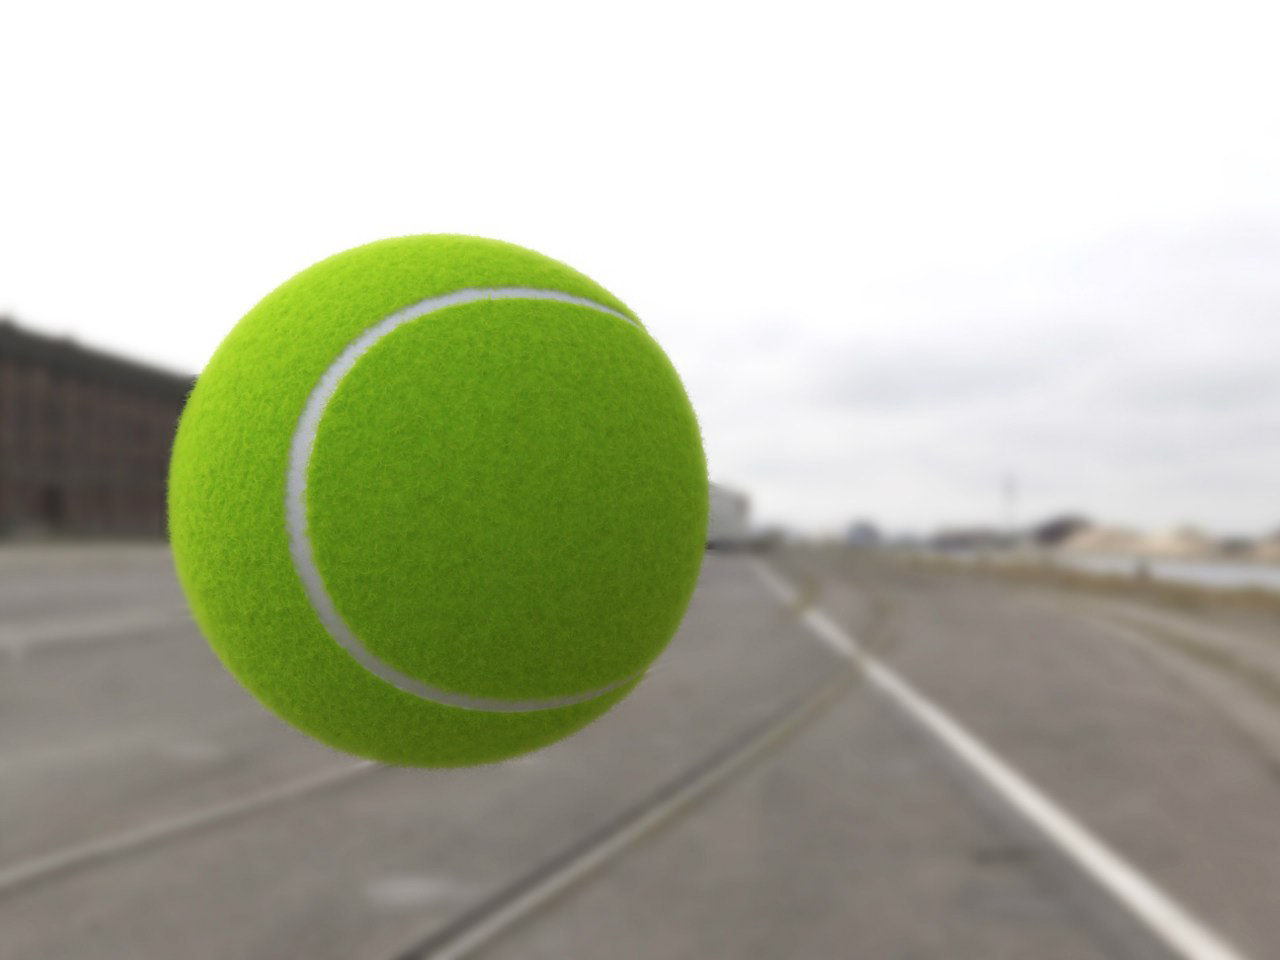 Коробка теннисных мячей. Теннисный мячик. Желтый теннисный мячик. Теннисный мячик с глазии. Мяч большой теннис ingame.